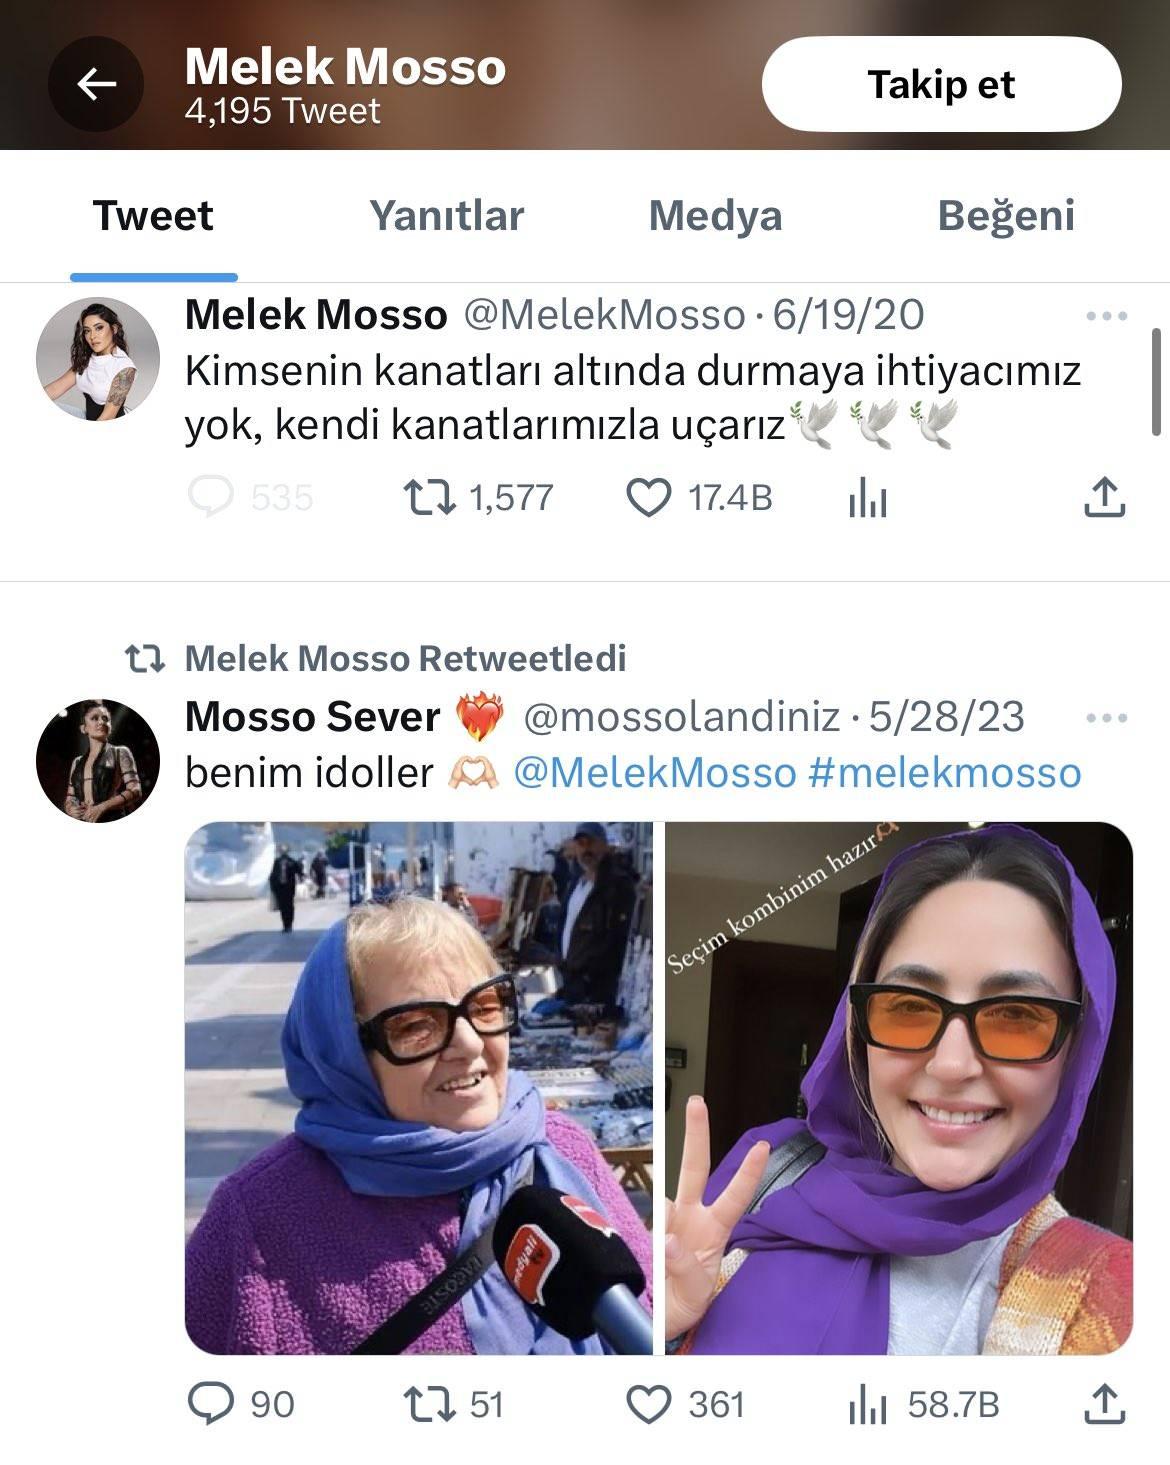 Melek Mosso AK Partili kadınlara küfreden CHPli kadını idol edindi